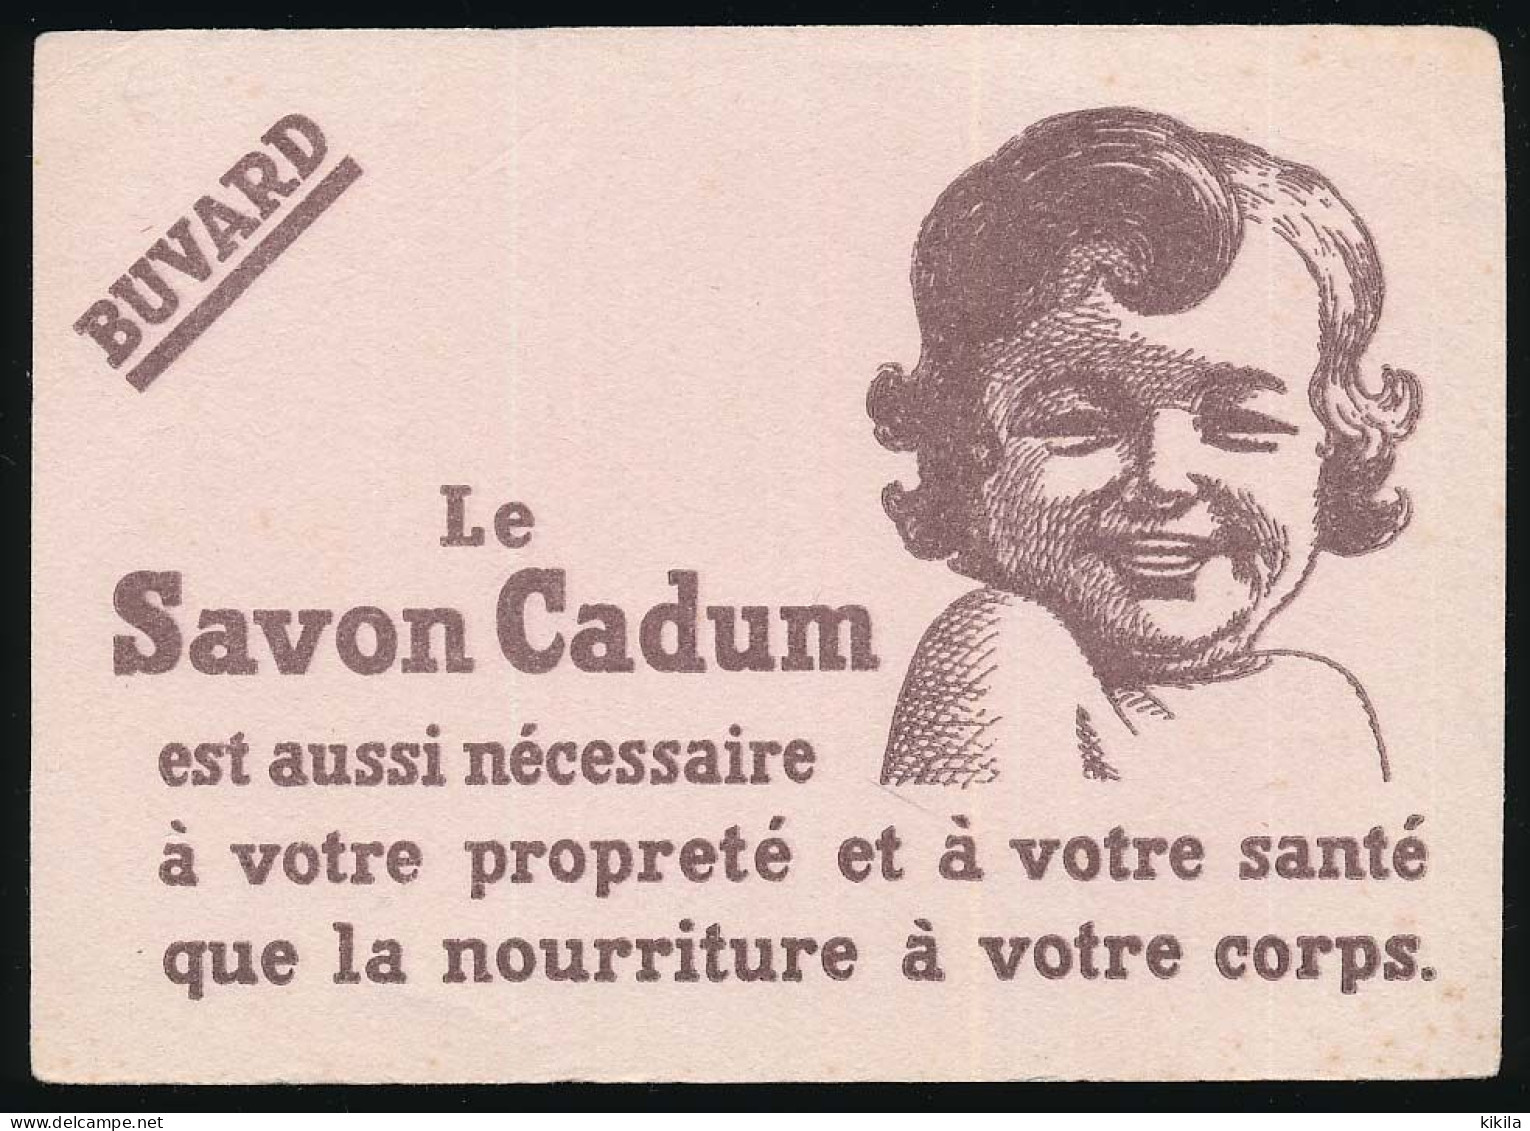 Buvard 16 X 11,4 Le Savon CADUM Bébé - Parfum & Kosmetik